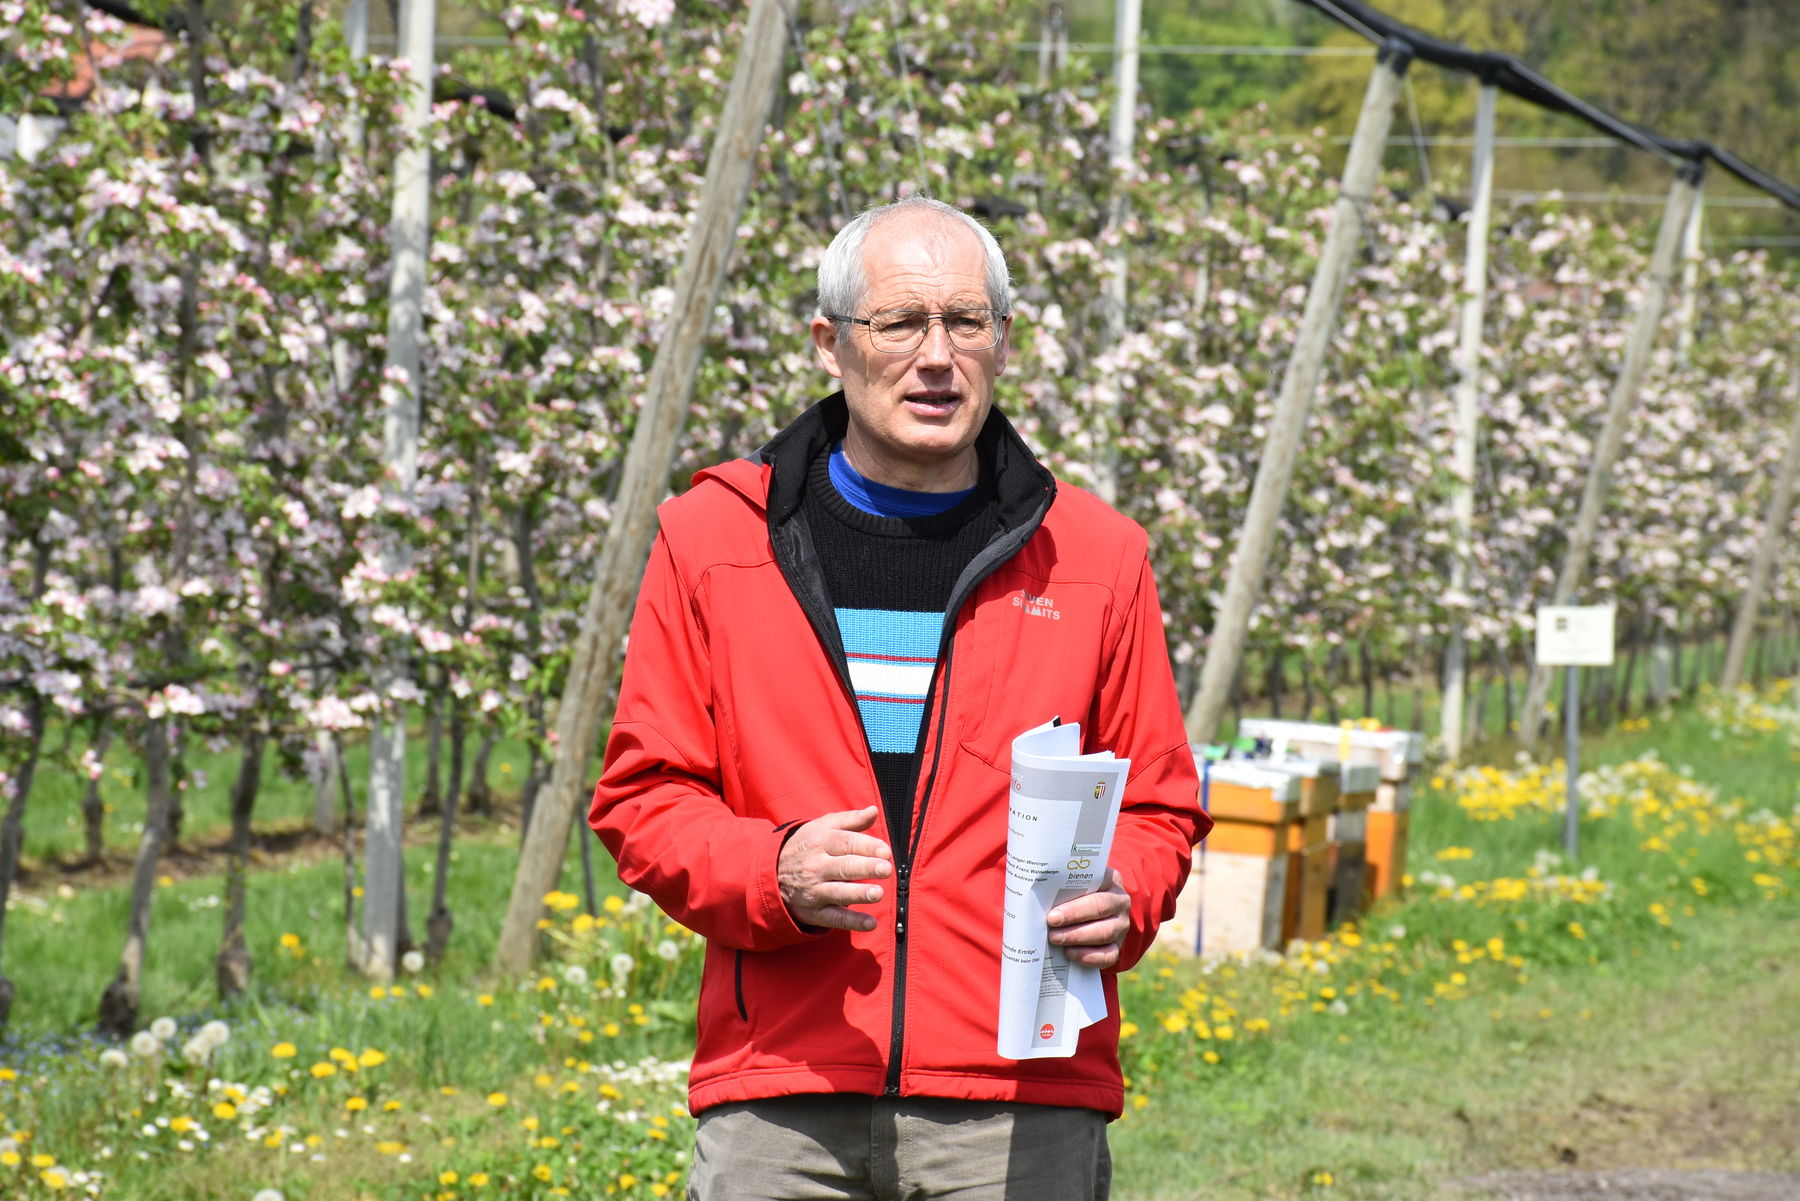 Wildbienenexperte Dr. Martin Schwarz aus OÖ informiert über die Bedeutung der Wildbienen und Hummeln für die optimale Bestäubung von Obstkulturen. .jpg